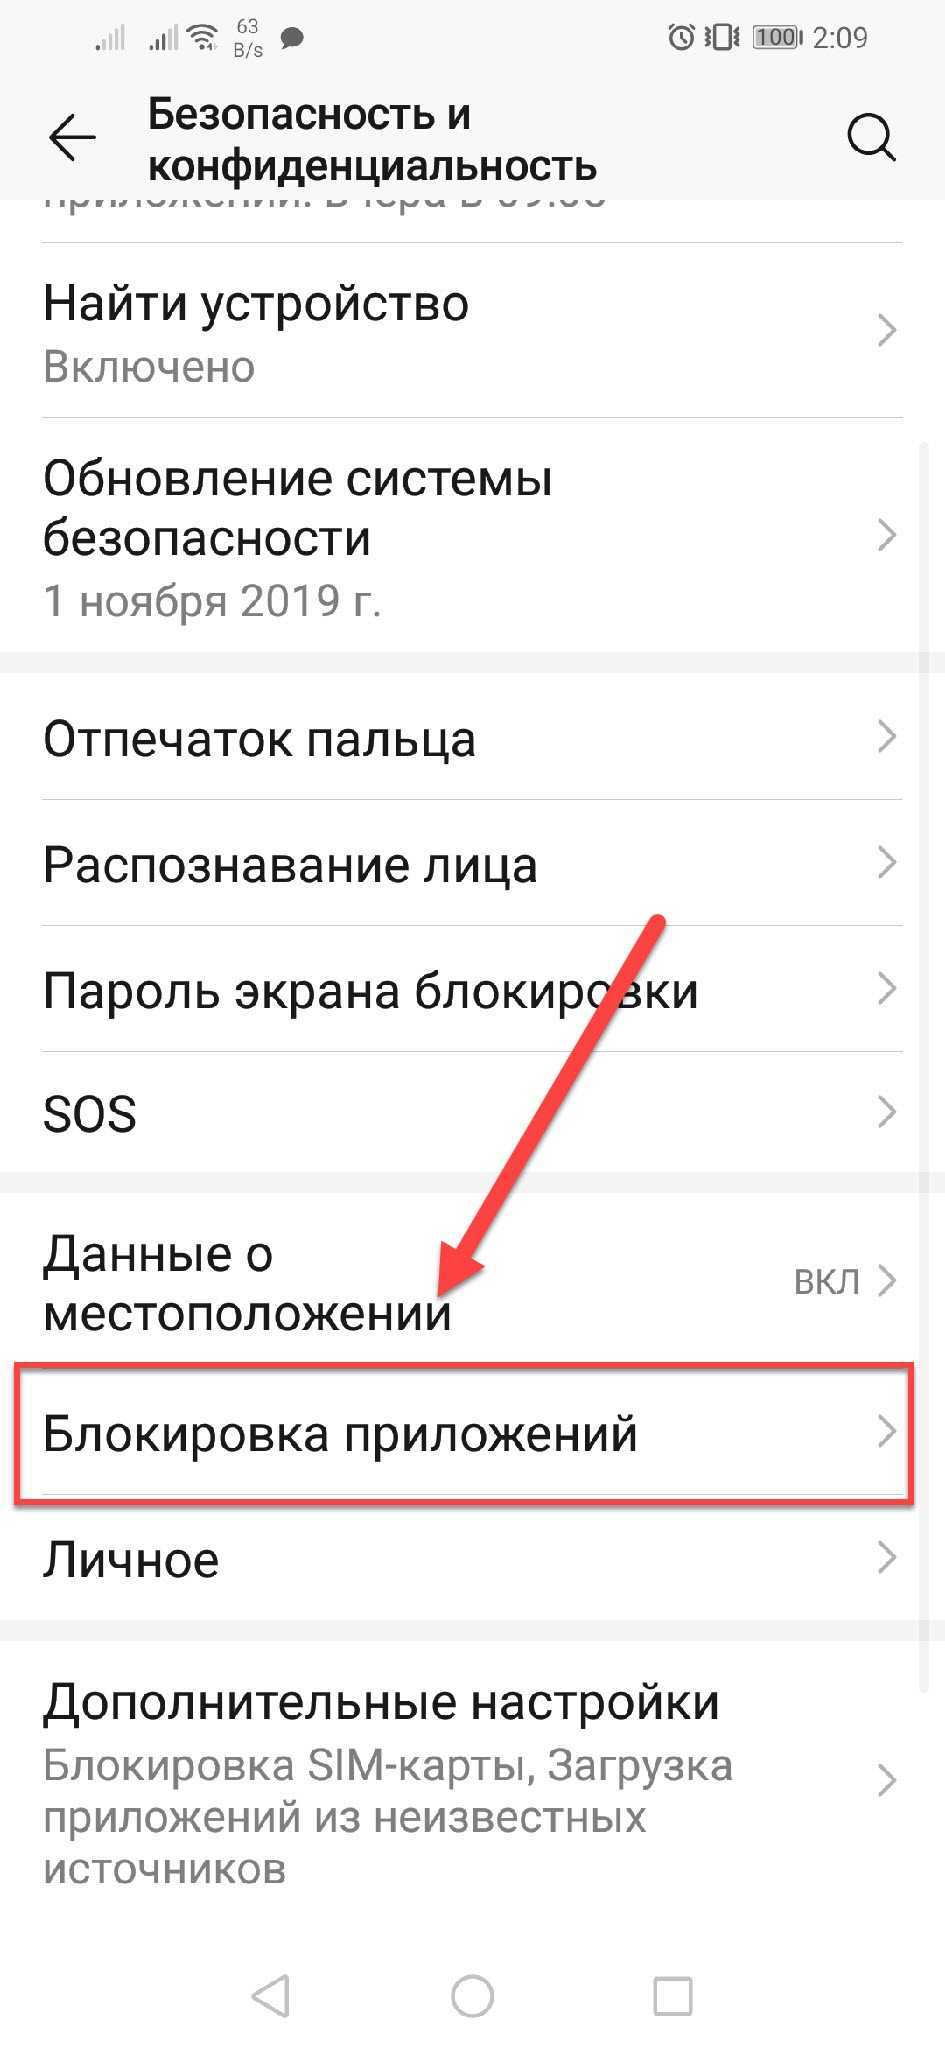 Как запаролить папку на андроиде в телефоне - все способы тарифкин.ру
как запаролить папку на андроиде в телефоне - все способы